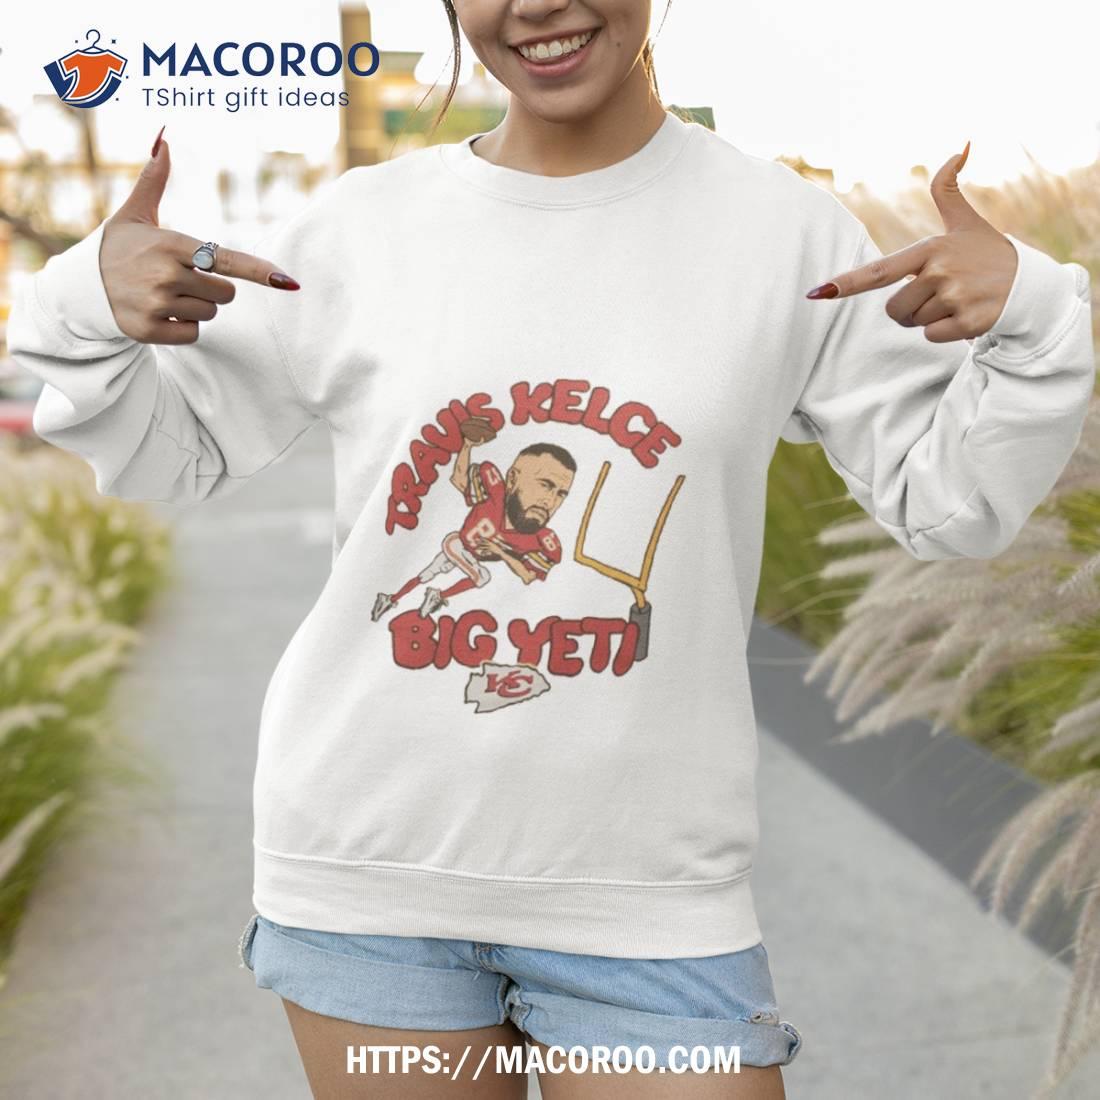 https://images.macoroo.com/wp-content/uploads/2023/09/kansas-city-chiefs-travis-kelce-big-yeti-2023-shirt-sweatshirt-1.jpg